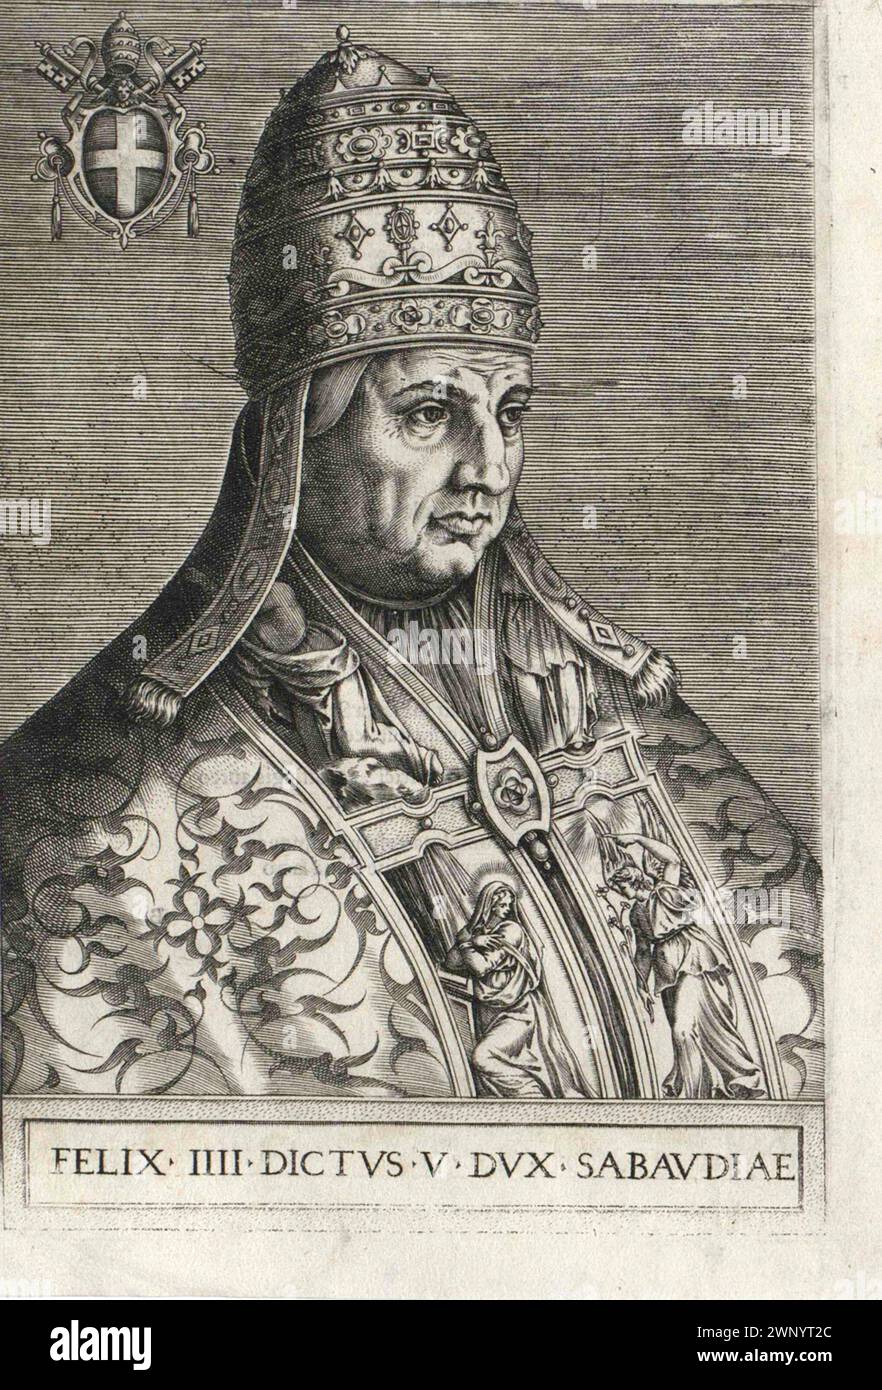 Ein Kupferstich von Papst Felix IV. Aus dem 16. Jahrhundert, der von 526 bis 530 Jahre alt war. Er war der 54. Papst. Stockfoto